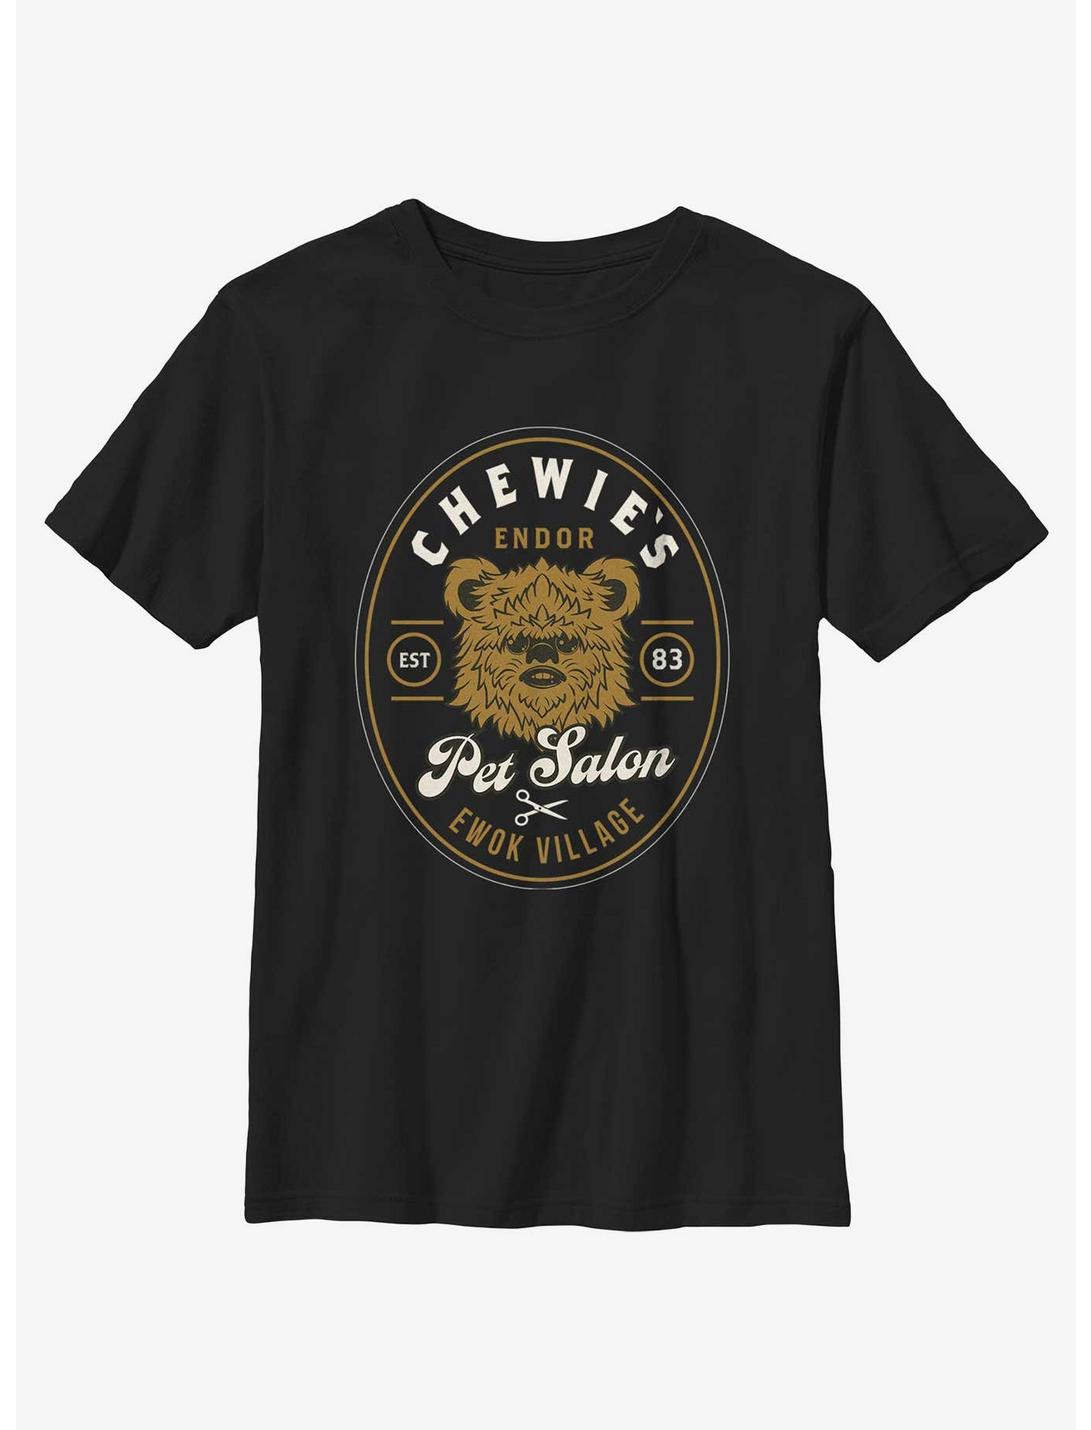 Star Wars Chewie's Pet Salon Ewok Village Youth T-Shirt, BLACK, hi-res